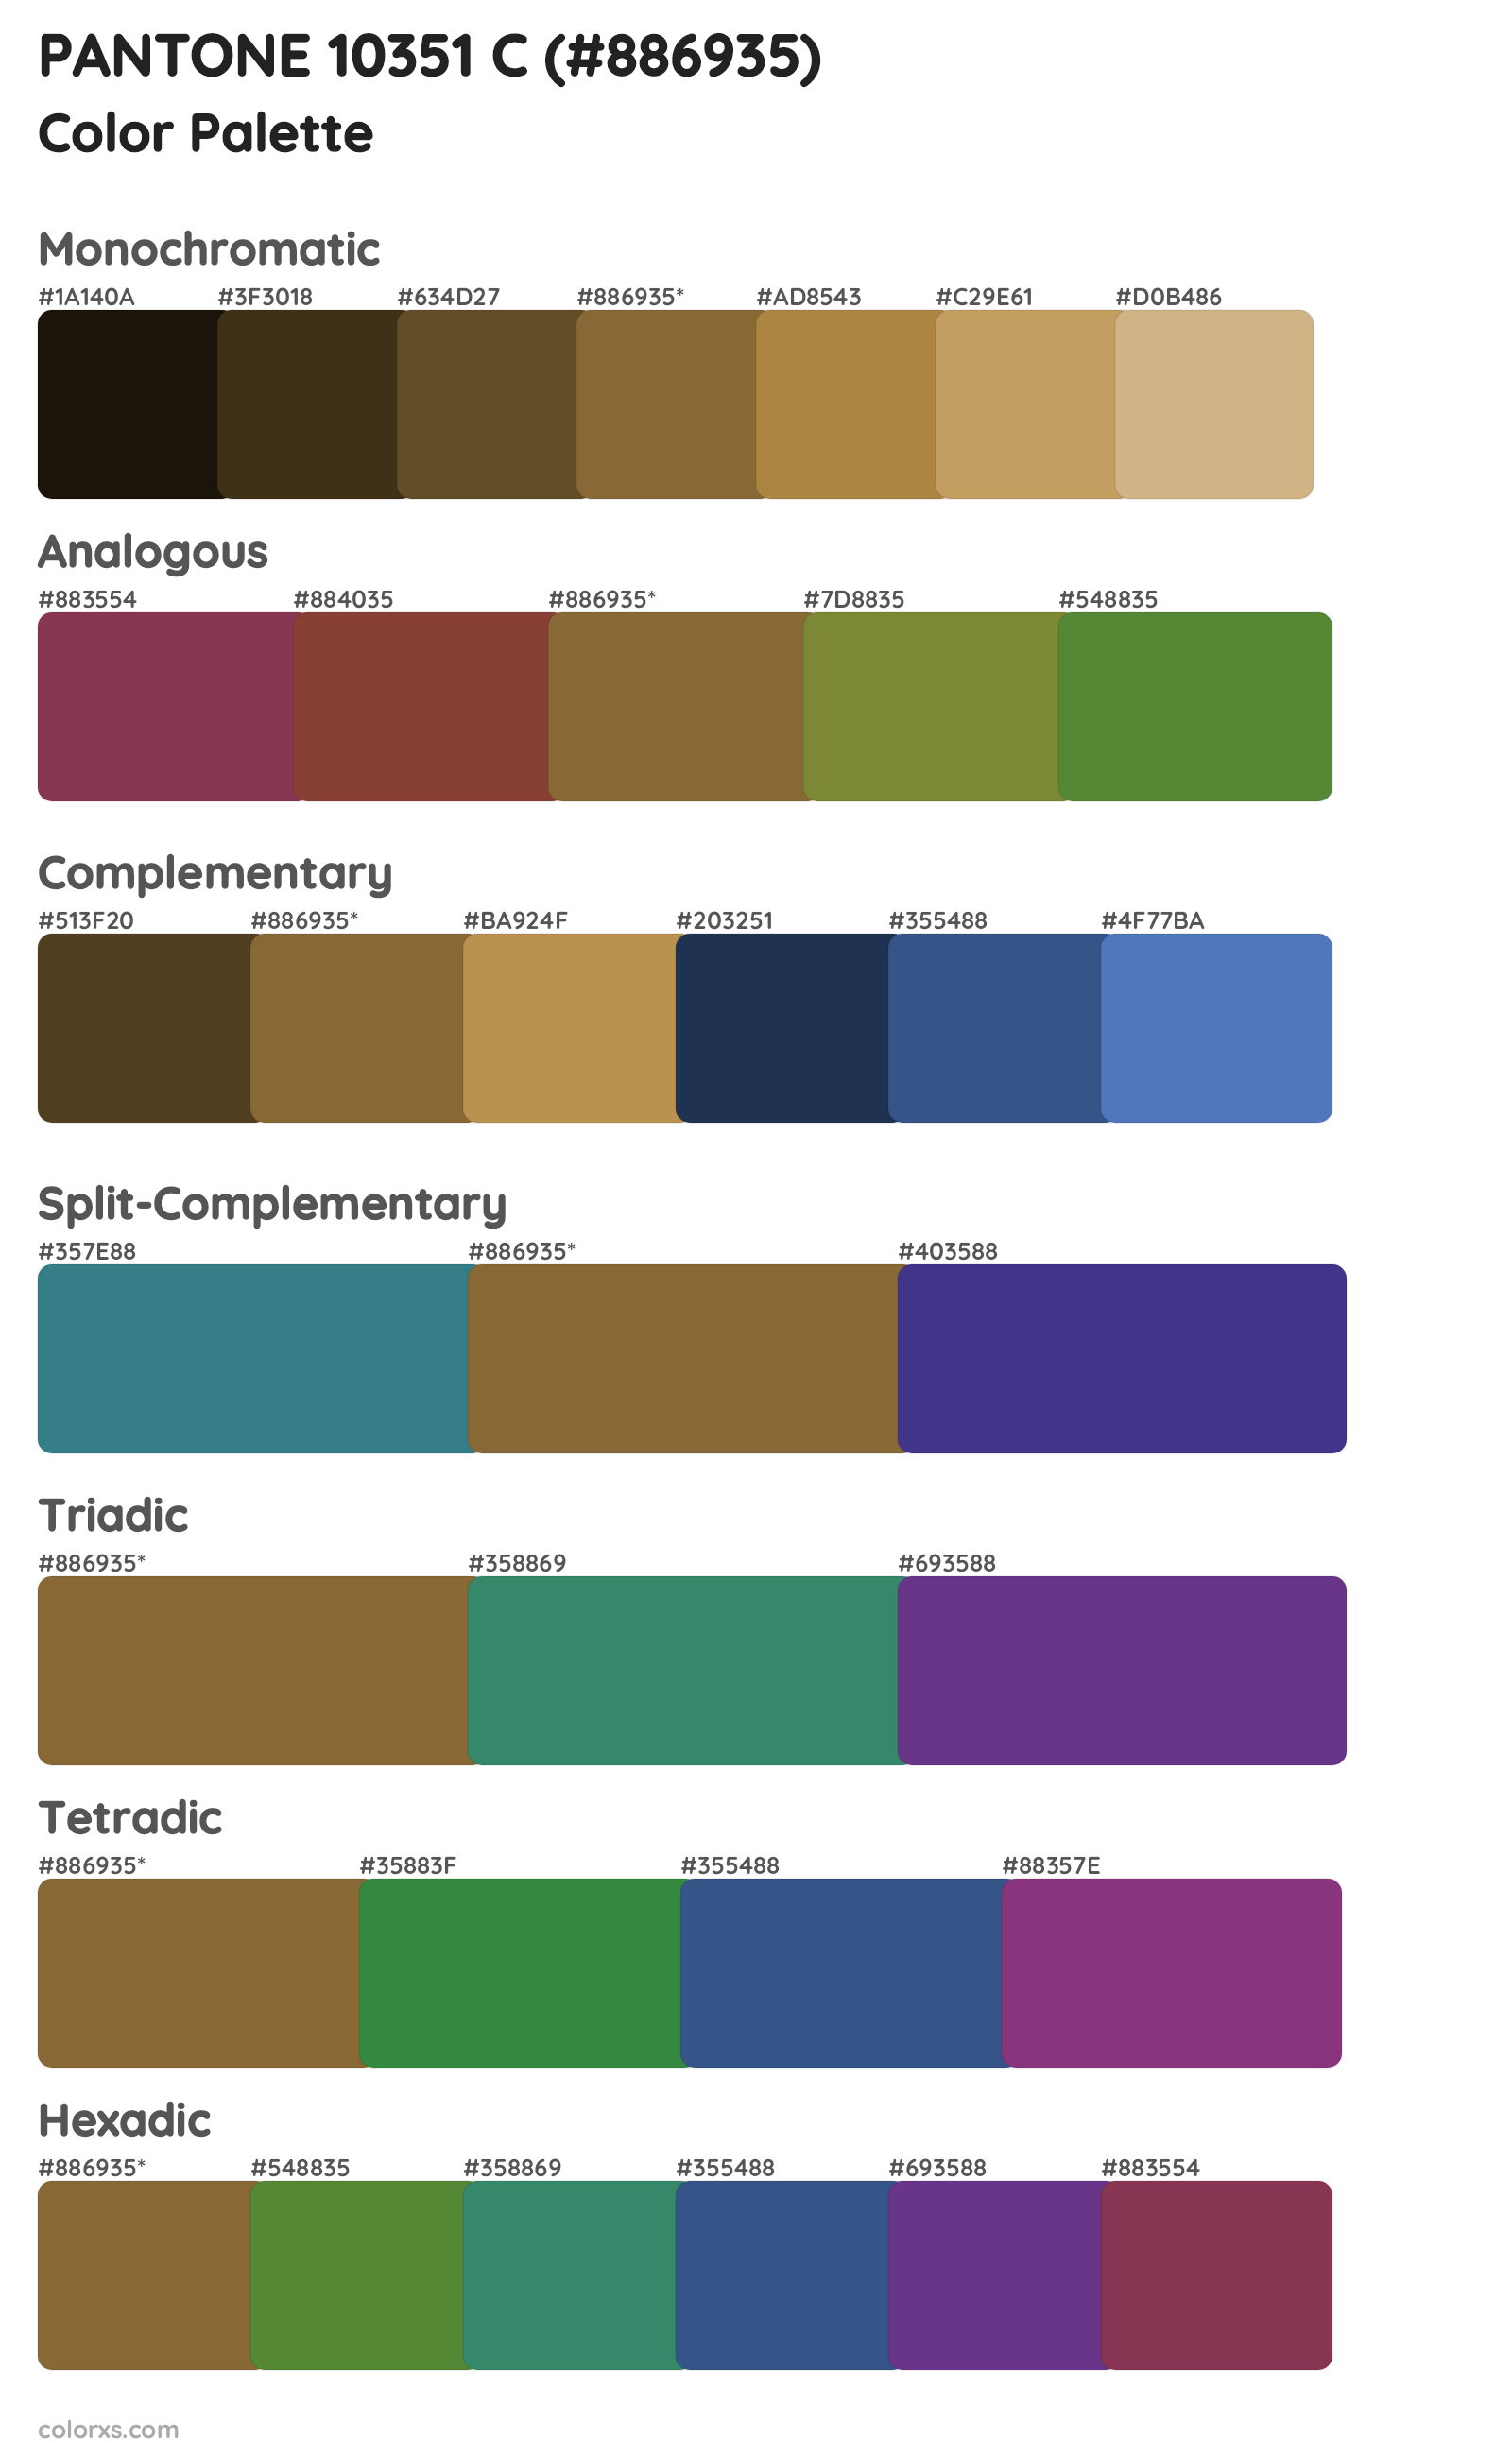 PANTONE 10351 C Color Scheme Palettes